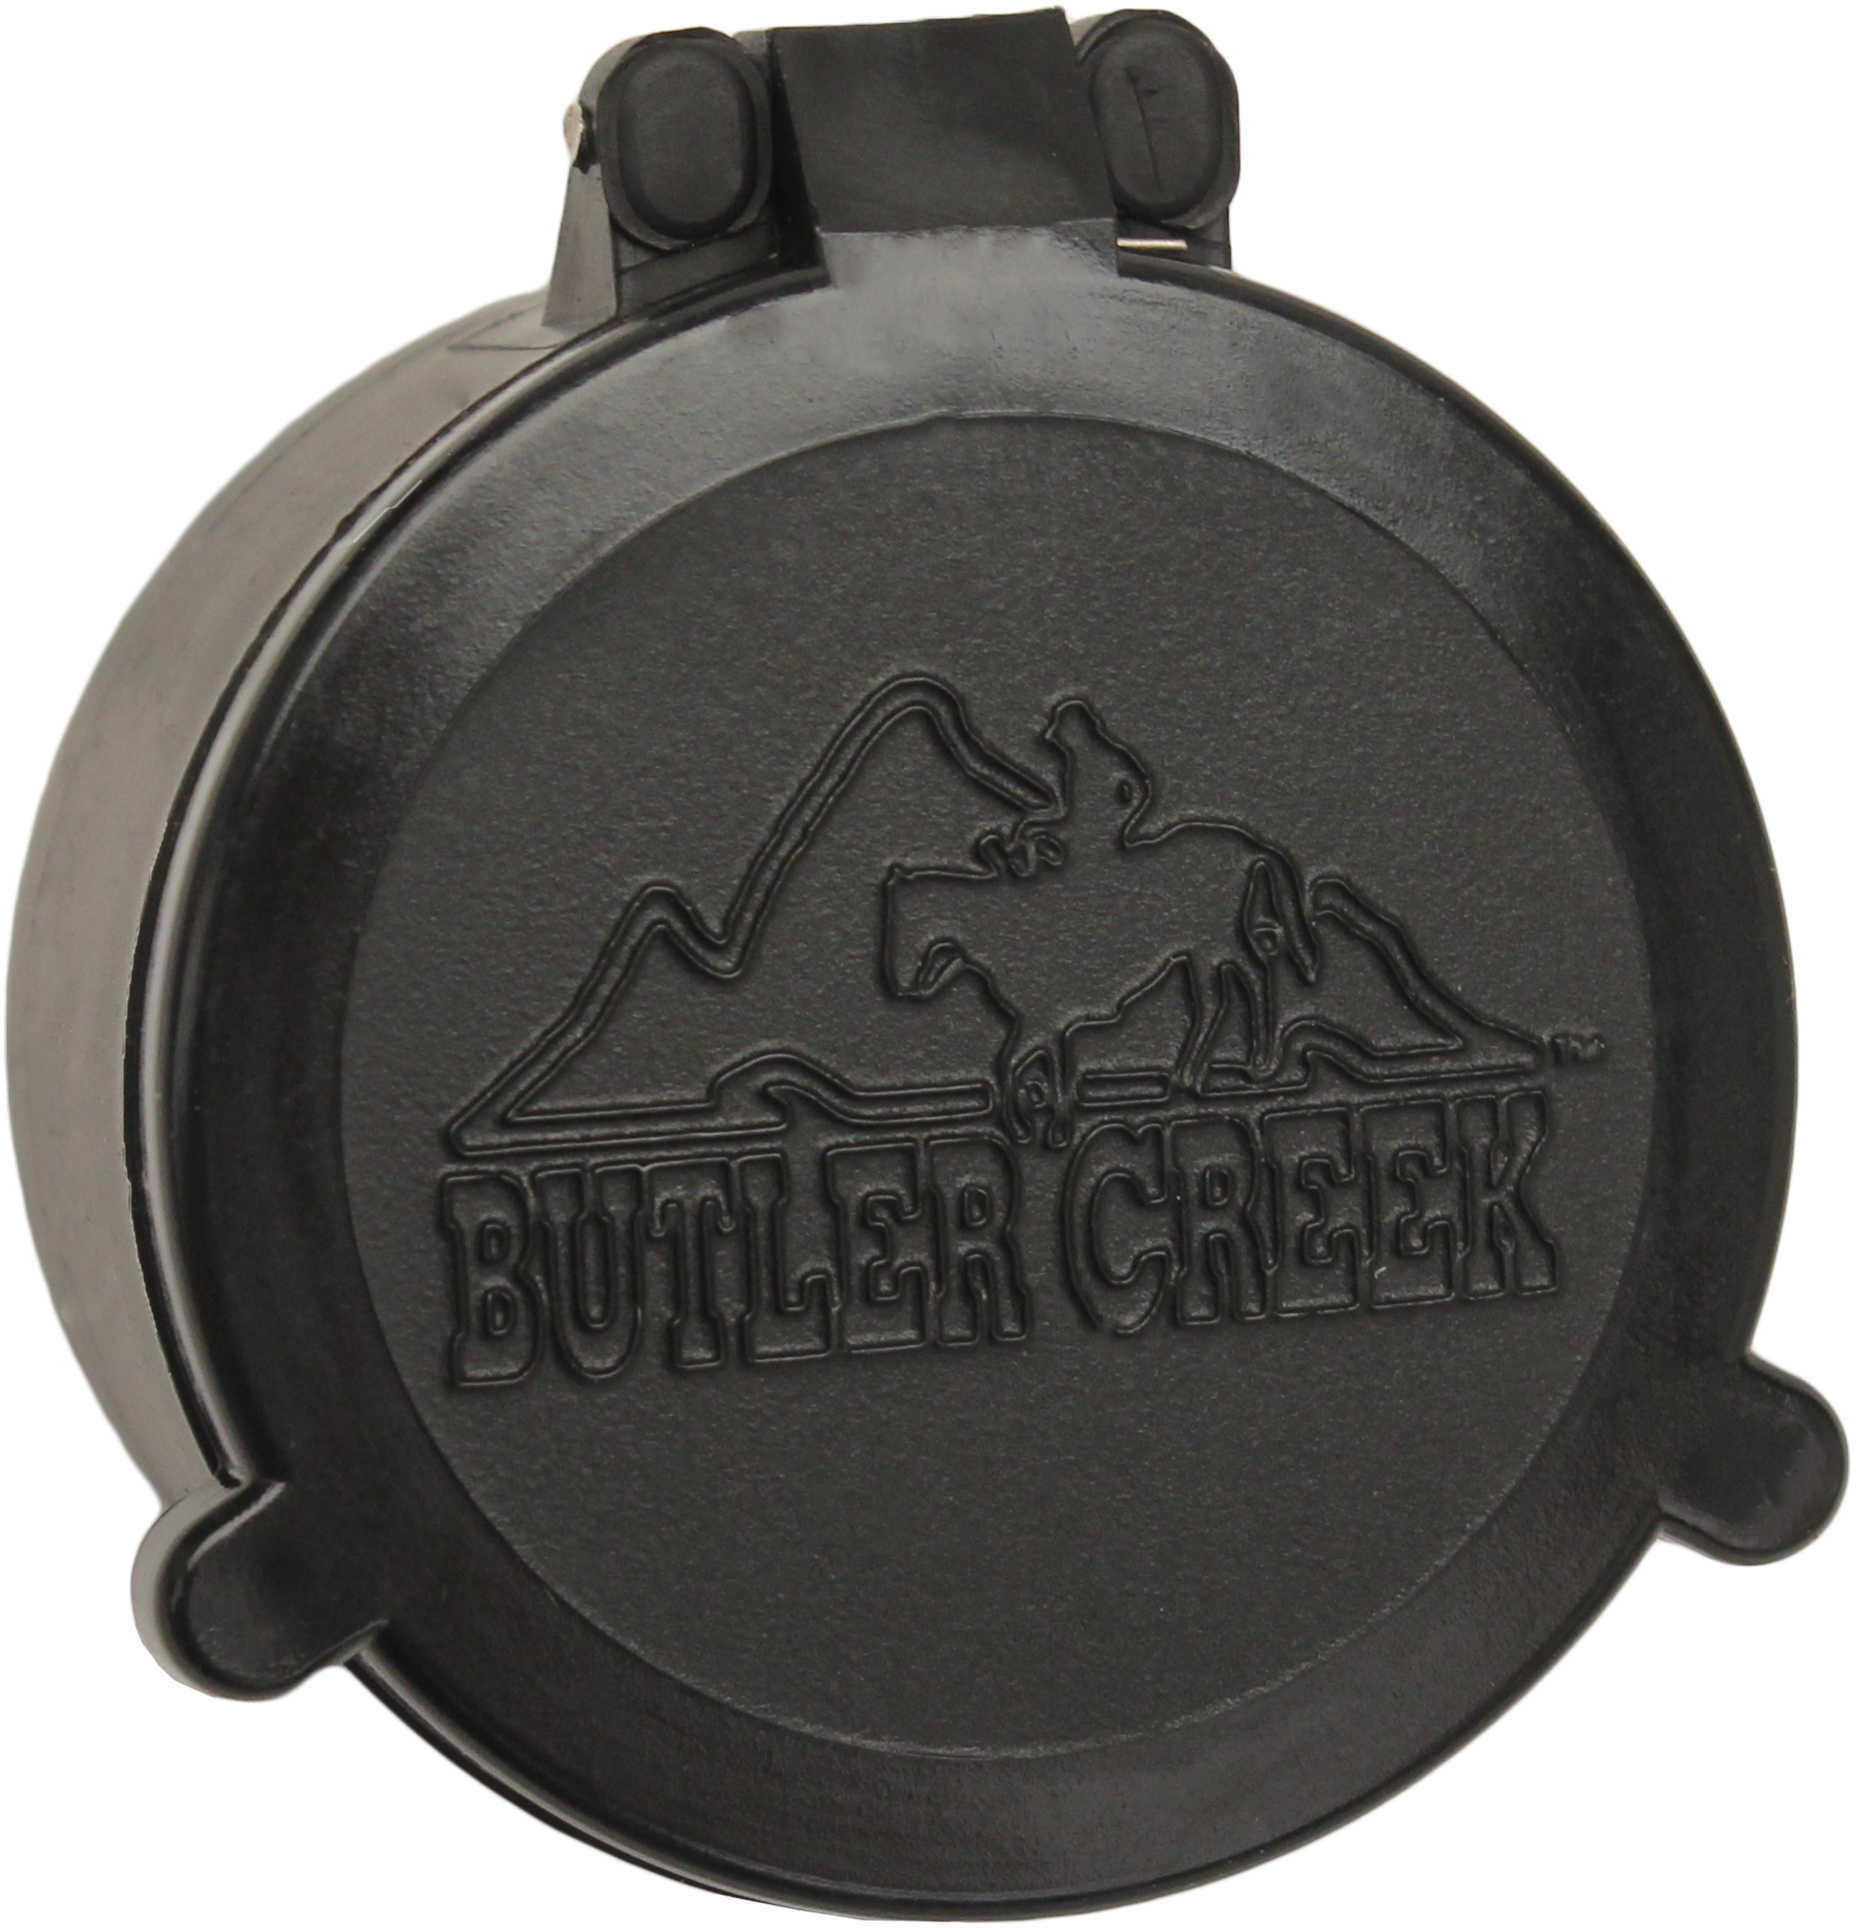 Butler Creek 30210 Flip-Open Scope Cover Objective Lens 44.10mm Slip On Polymer Black